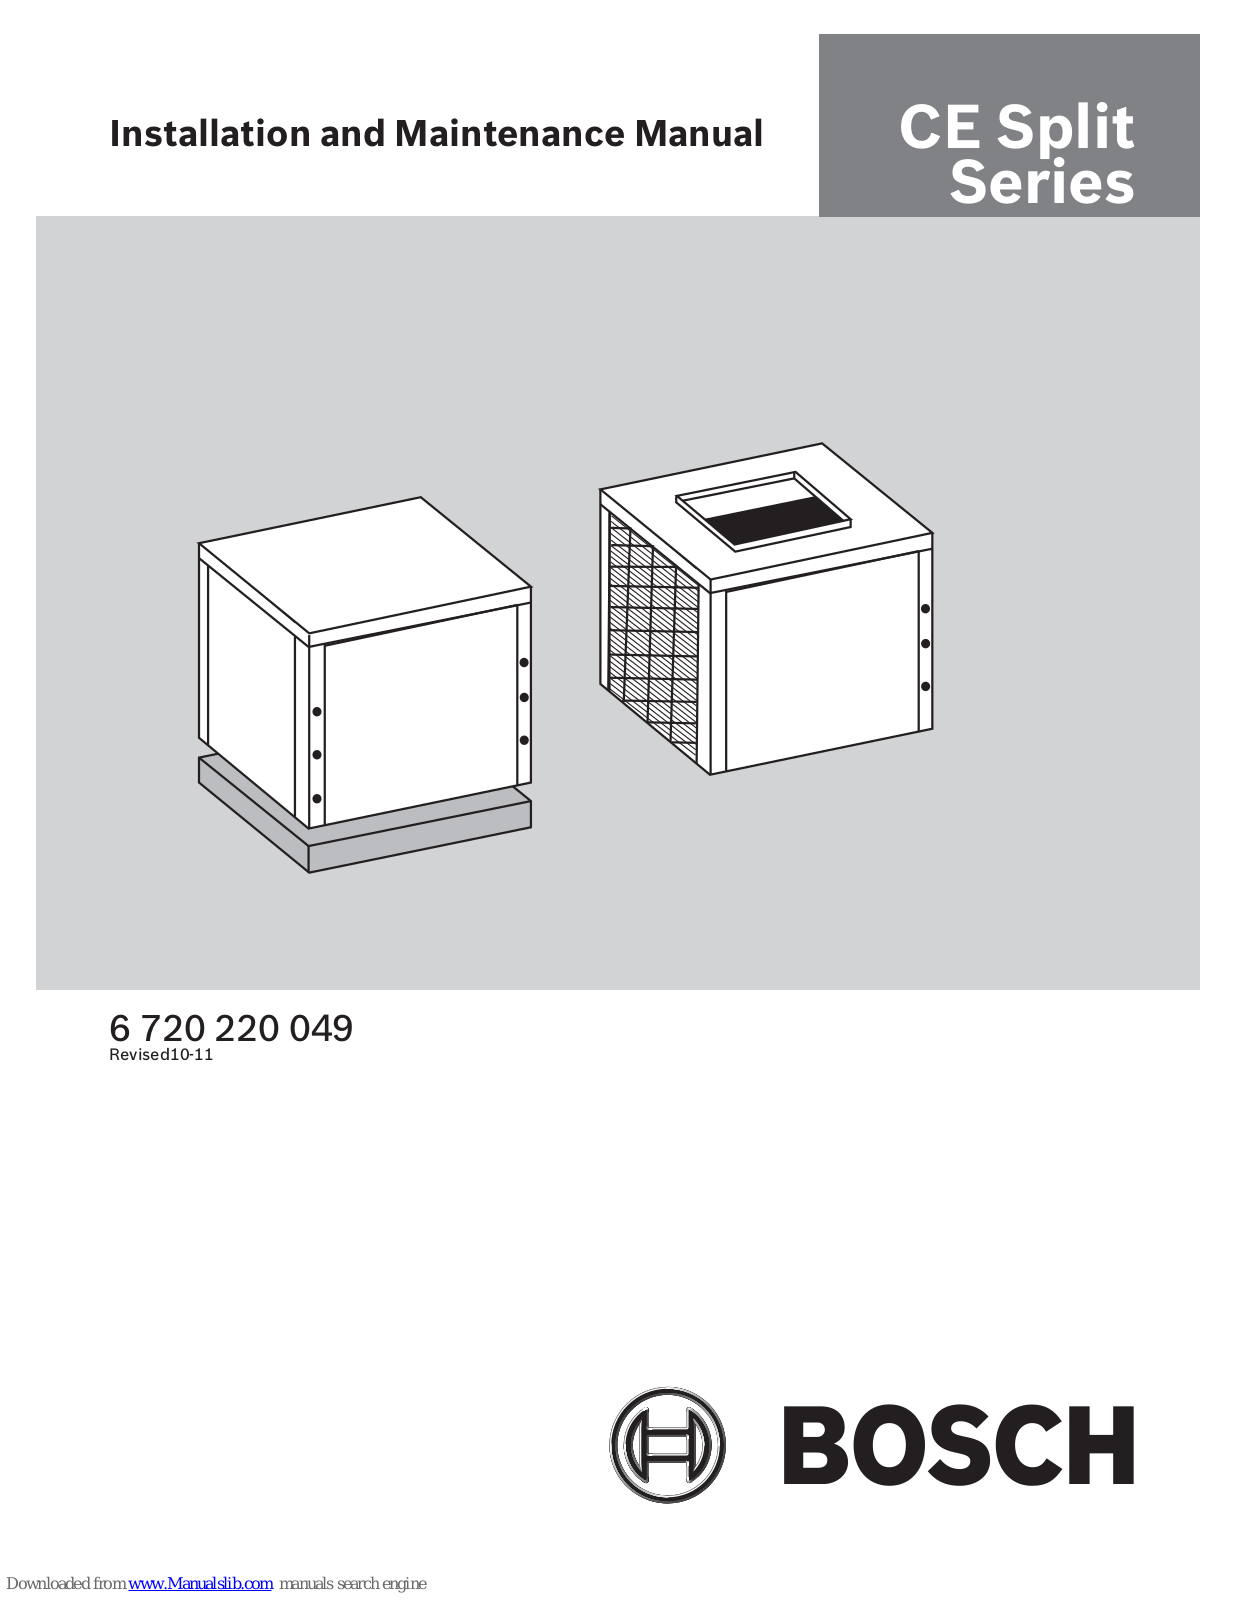 Bosch CE025, CE049, CE035, CE061, CE071 Installation And Maintenance Manual